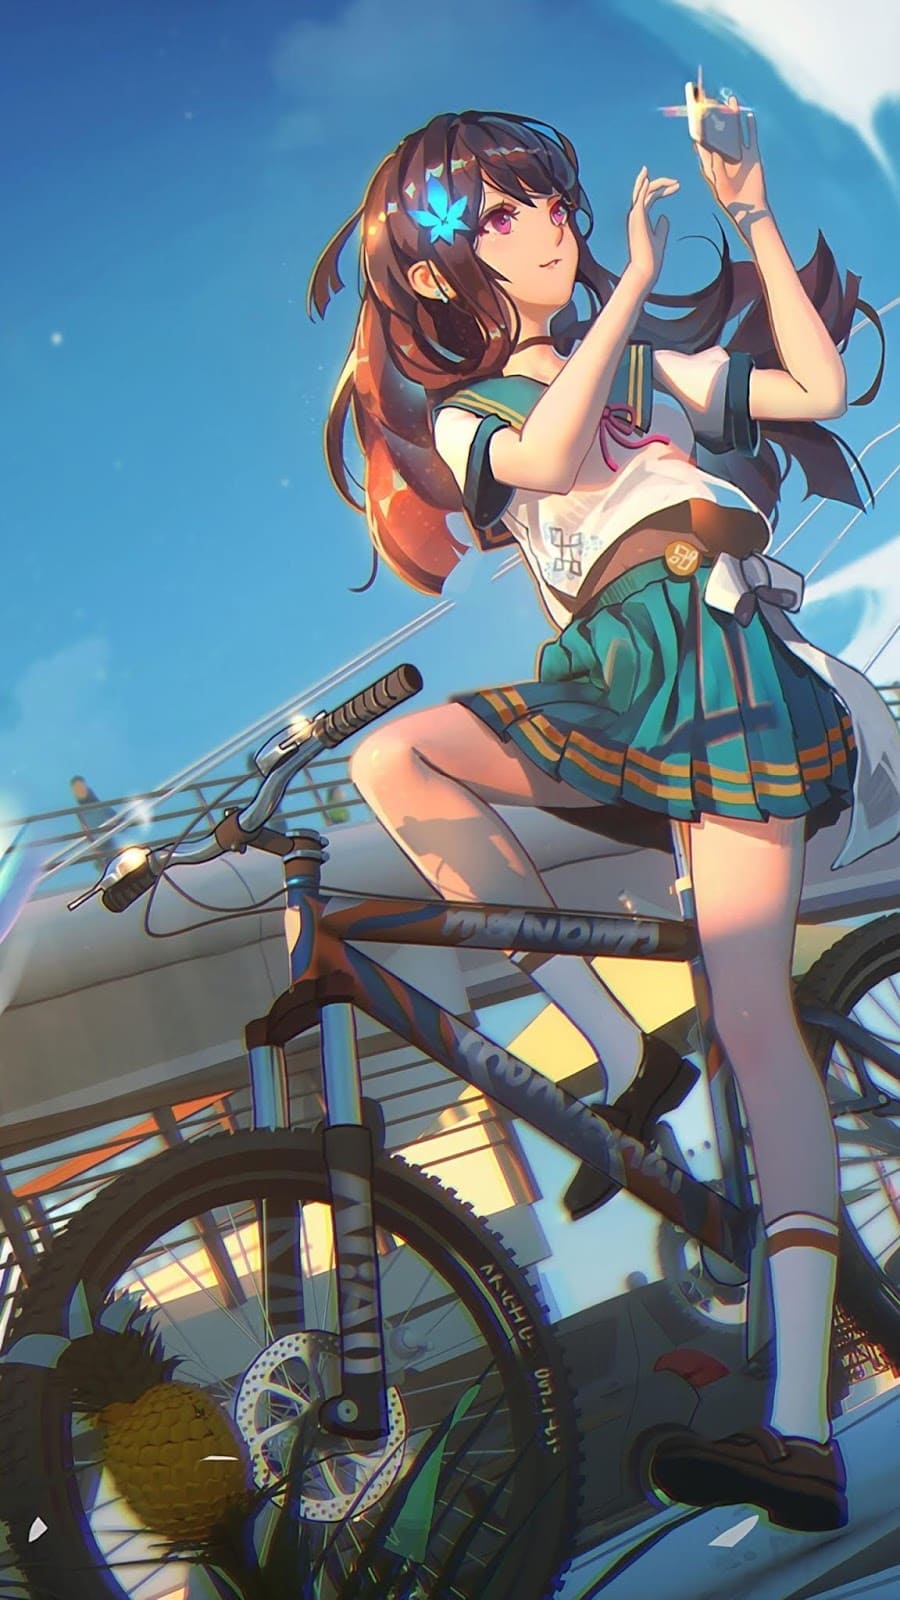 Anime 4k Wallpaper | Imagens De Animes De Alta Qualidade!